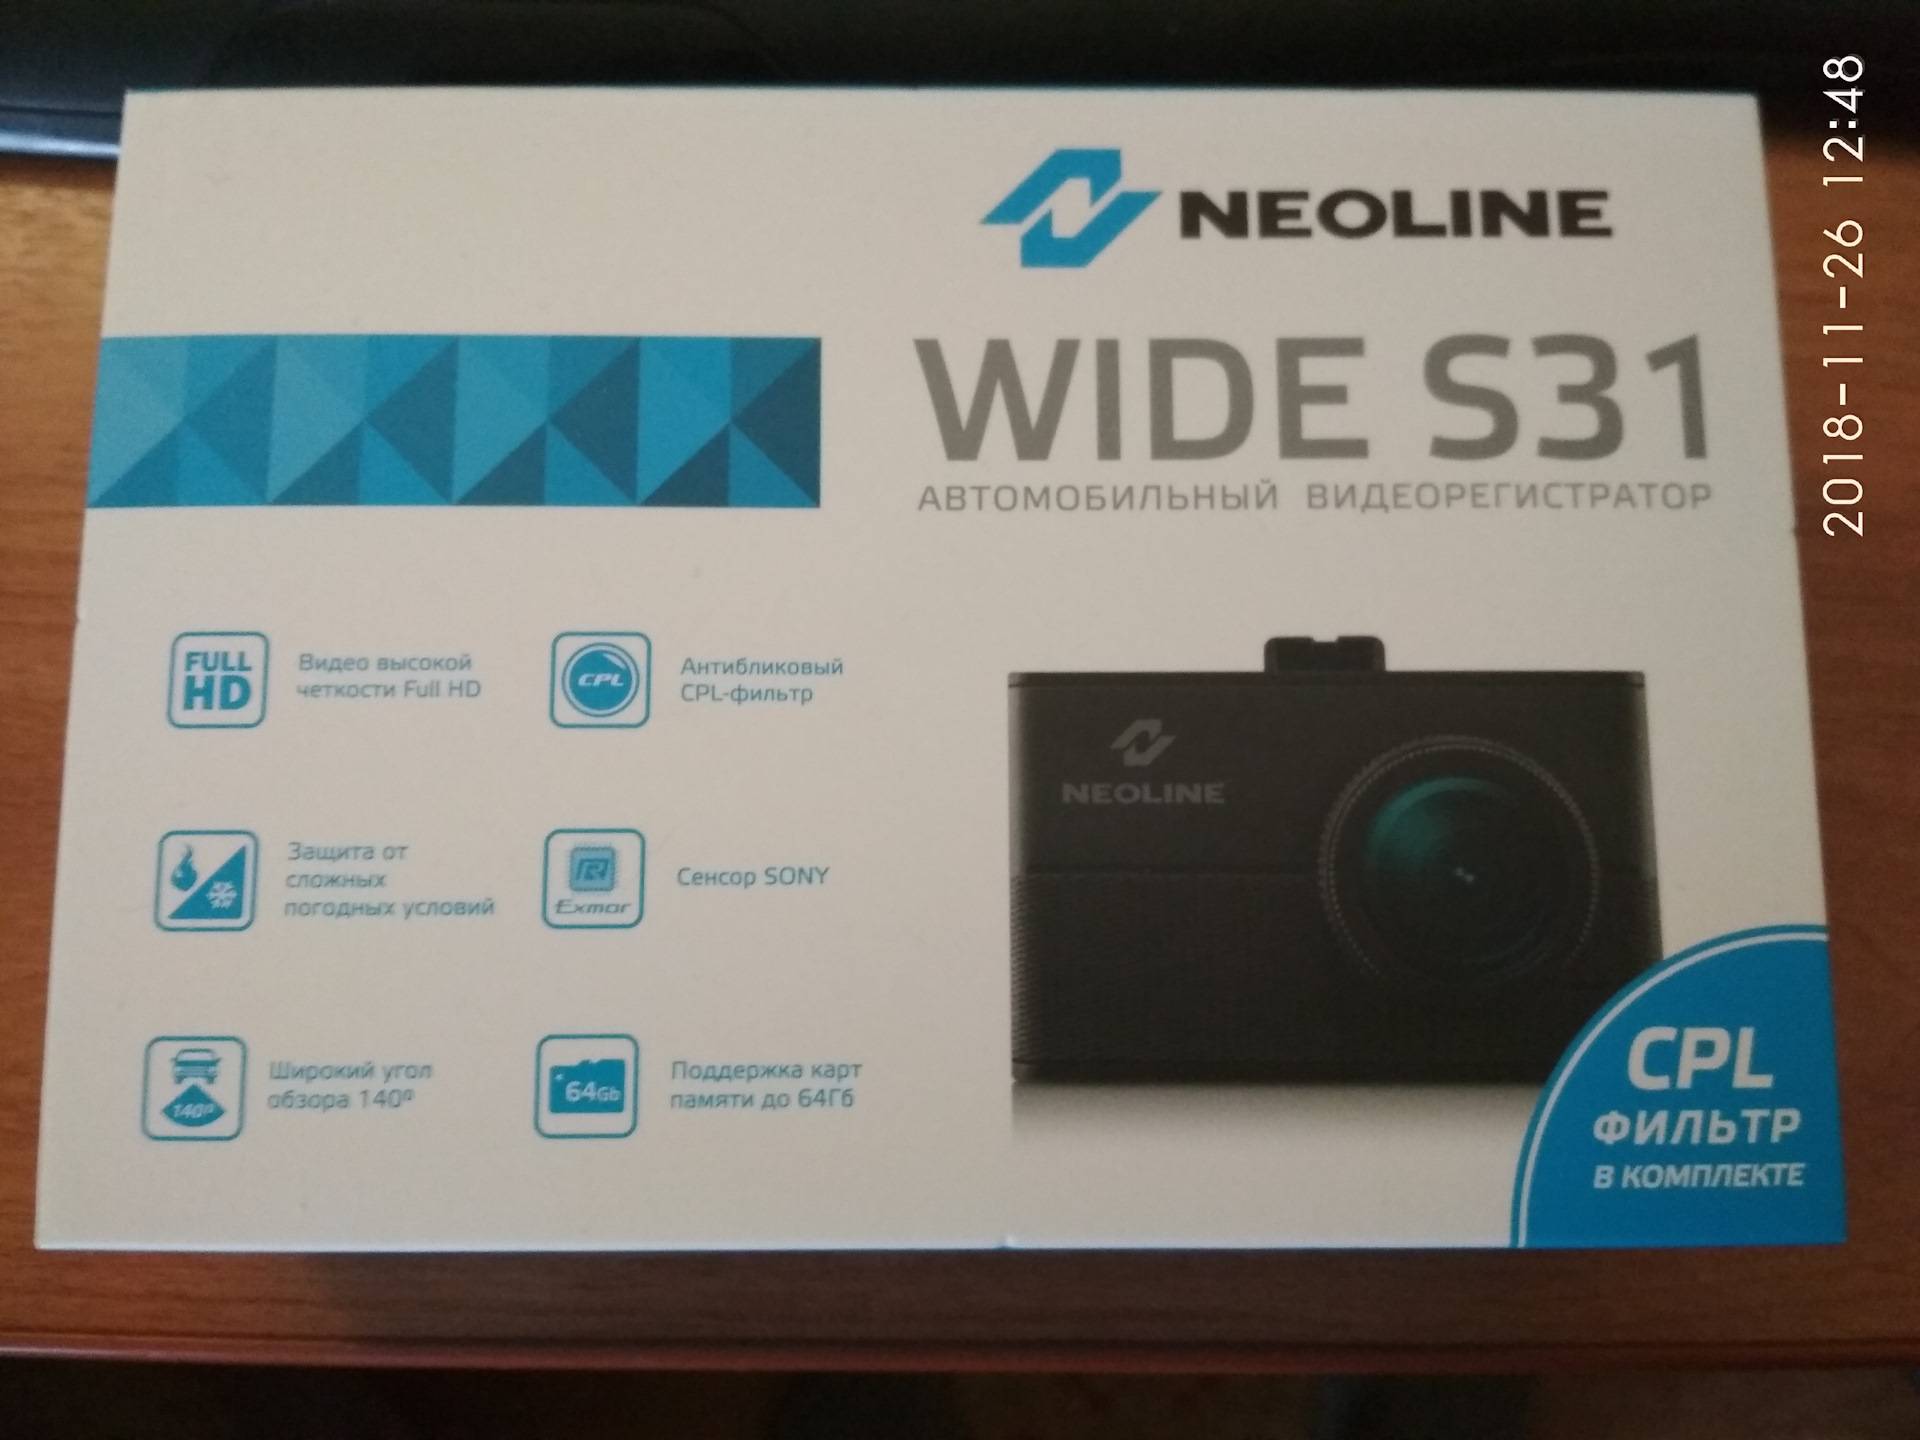 Neoline кондиционер отзывы. Neoline wide s31. Крепление для видеорегистратора Neoline wide s31. Кабель Neoline wide s31. Видеорегистратор Неолайн ошибка памяти.